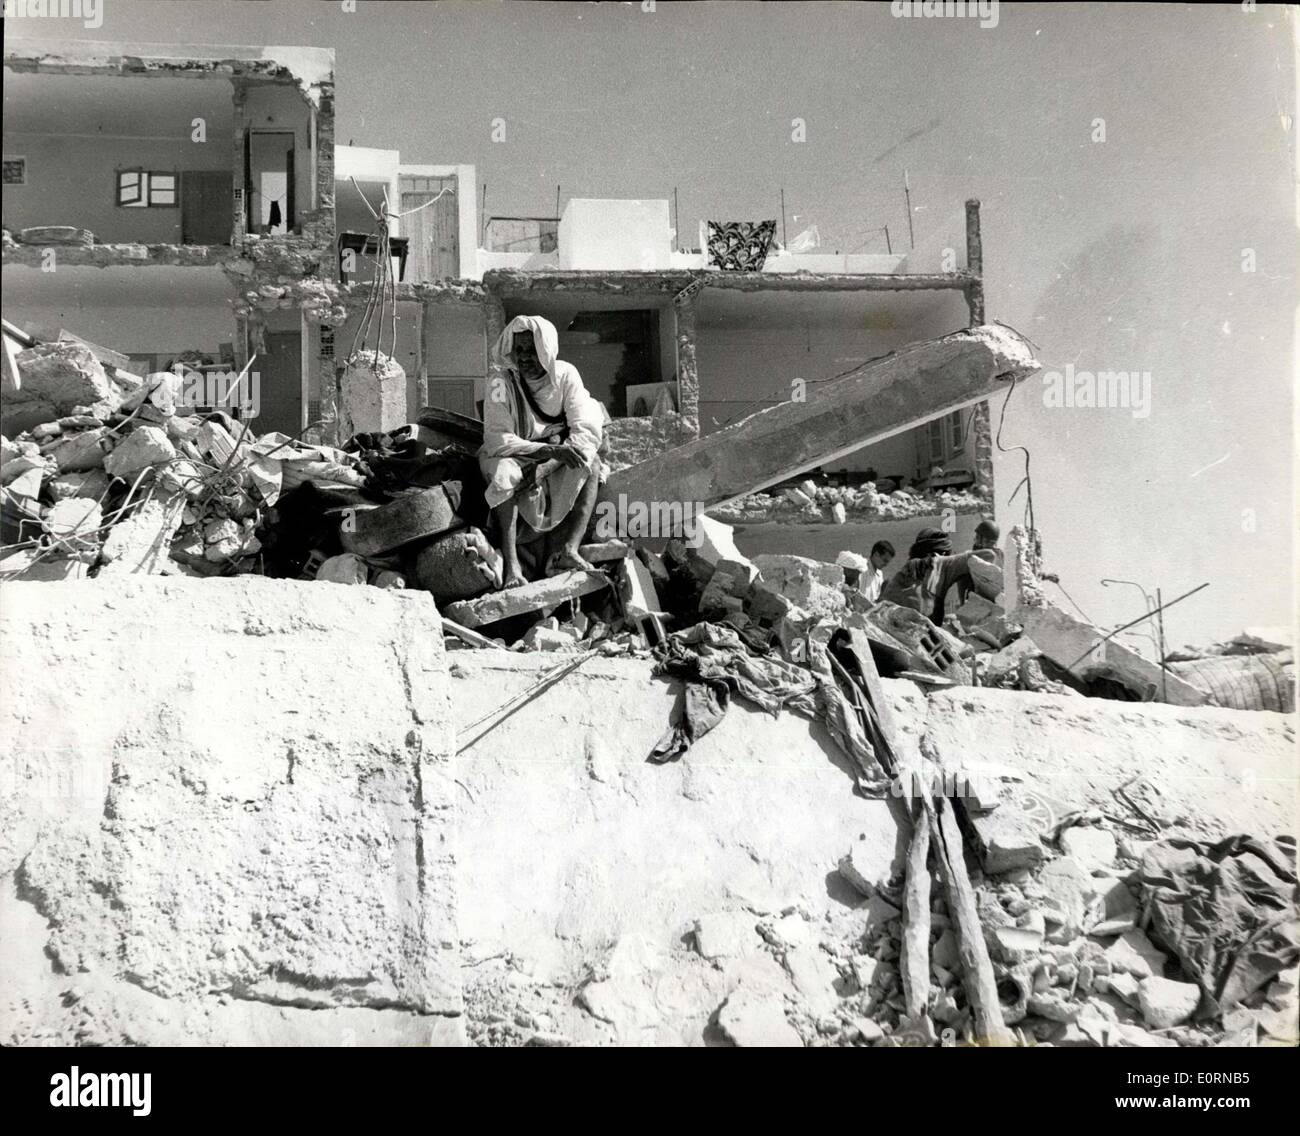 Mar. 04, 1960 - Après le tremblement de terre à Agadir. Au milieu des maisons détruites. Photo montre un indigène s'accroupit sur ce qui reste d'une rangée de maisons - après le tremblement de terre à Agadir (Maroc) - qui a causé la mort d'environ 5 000 personnes. Banque D'Images